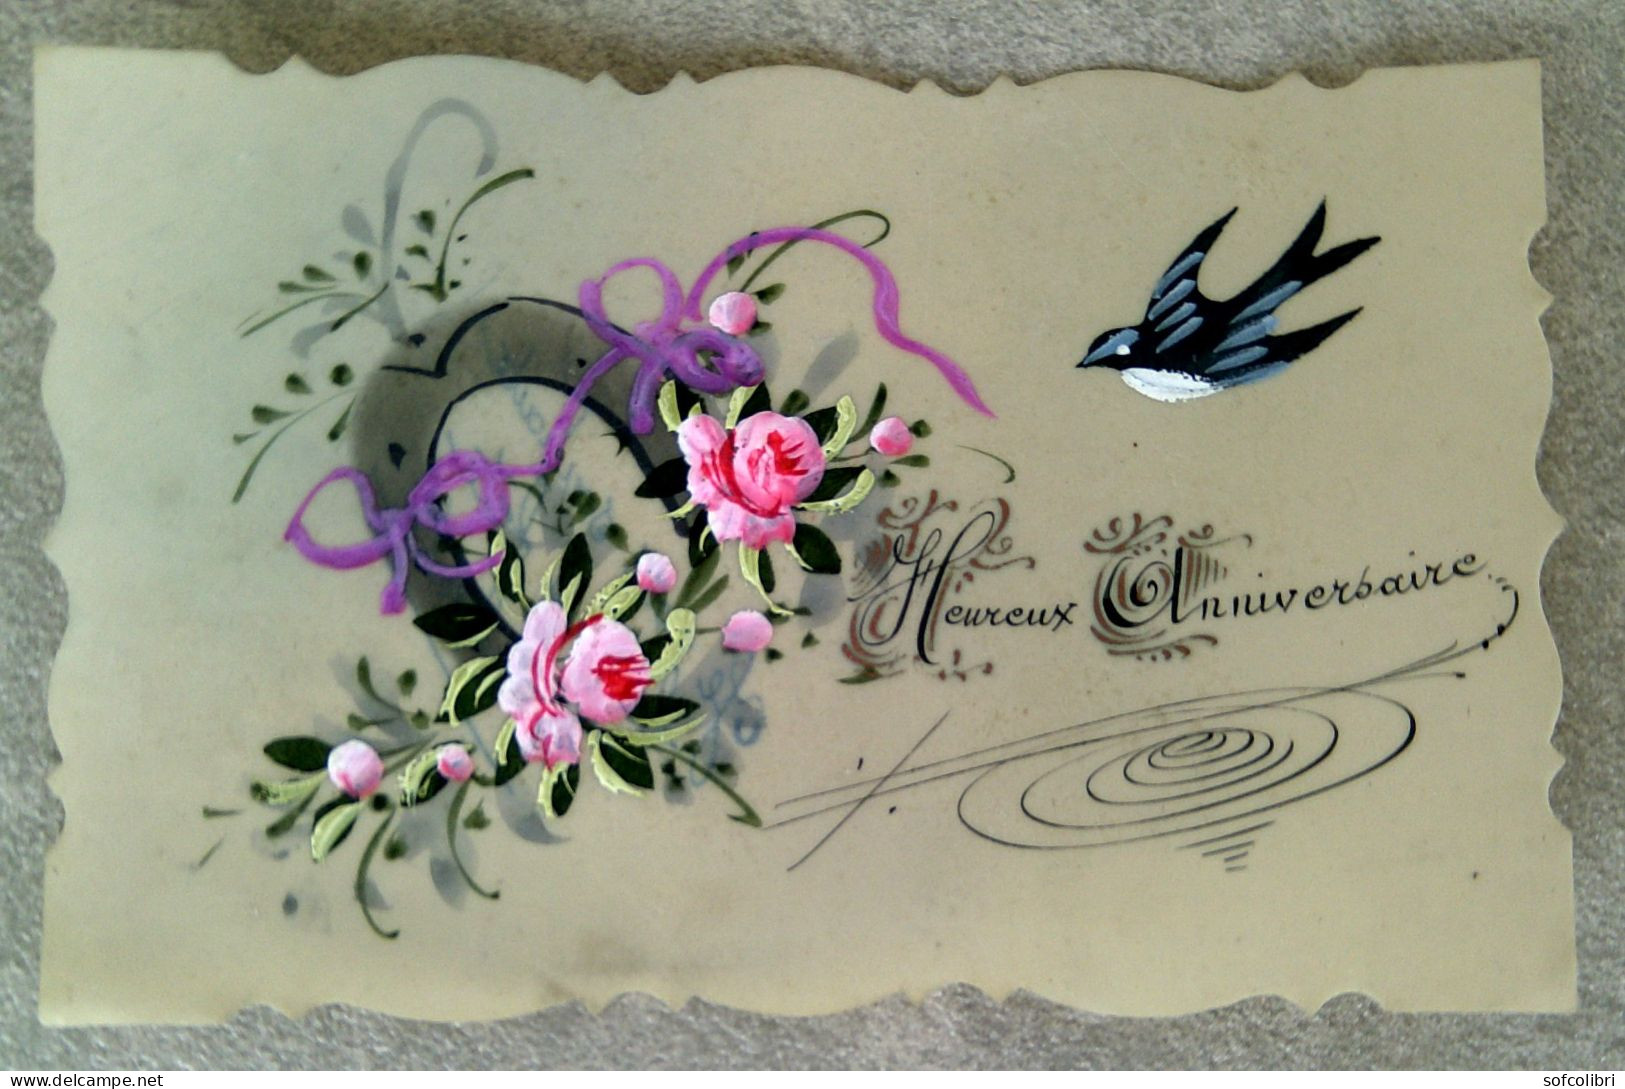 HEUREUX ANNIVERSAIRE- Carte En Rhodoïde, Peinte à La Main. (fleurs, Hirondelle...) - Birthday